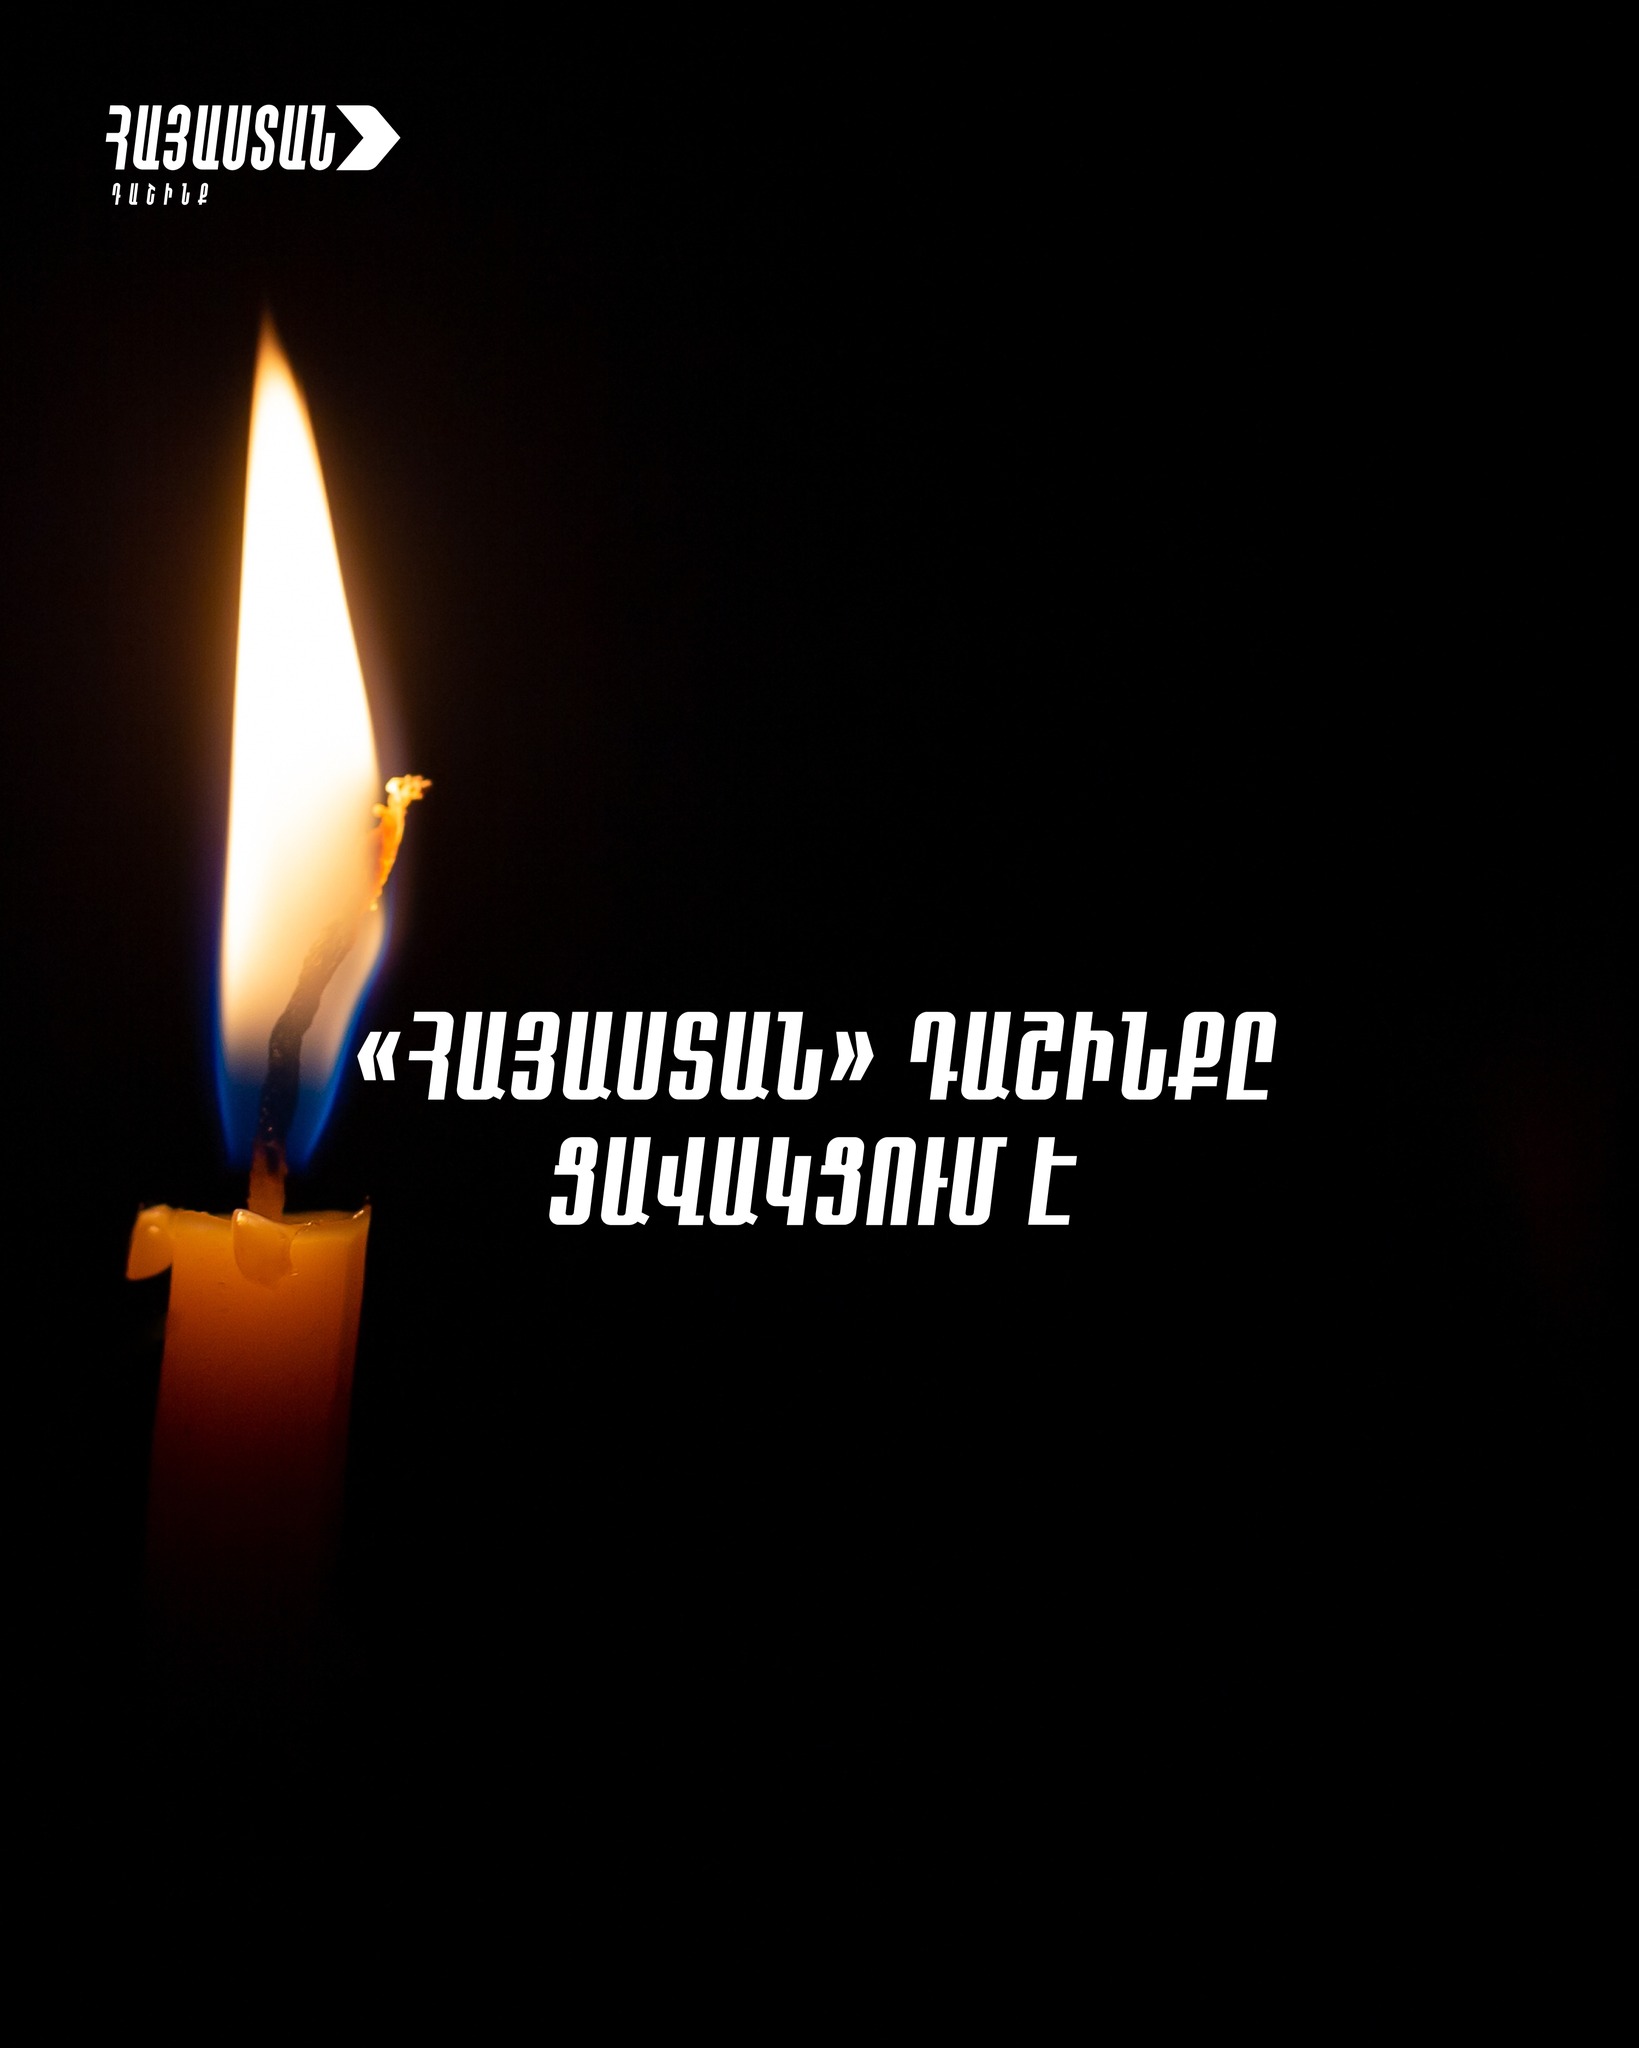 Սգում և կիսում ենք աղետի զոհ դարձած մեր հայրենակիցների կորստի ցավը․ «Հայաստան» դաշինք